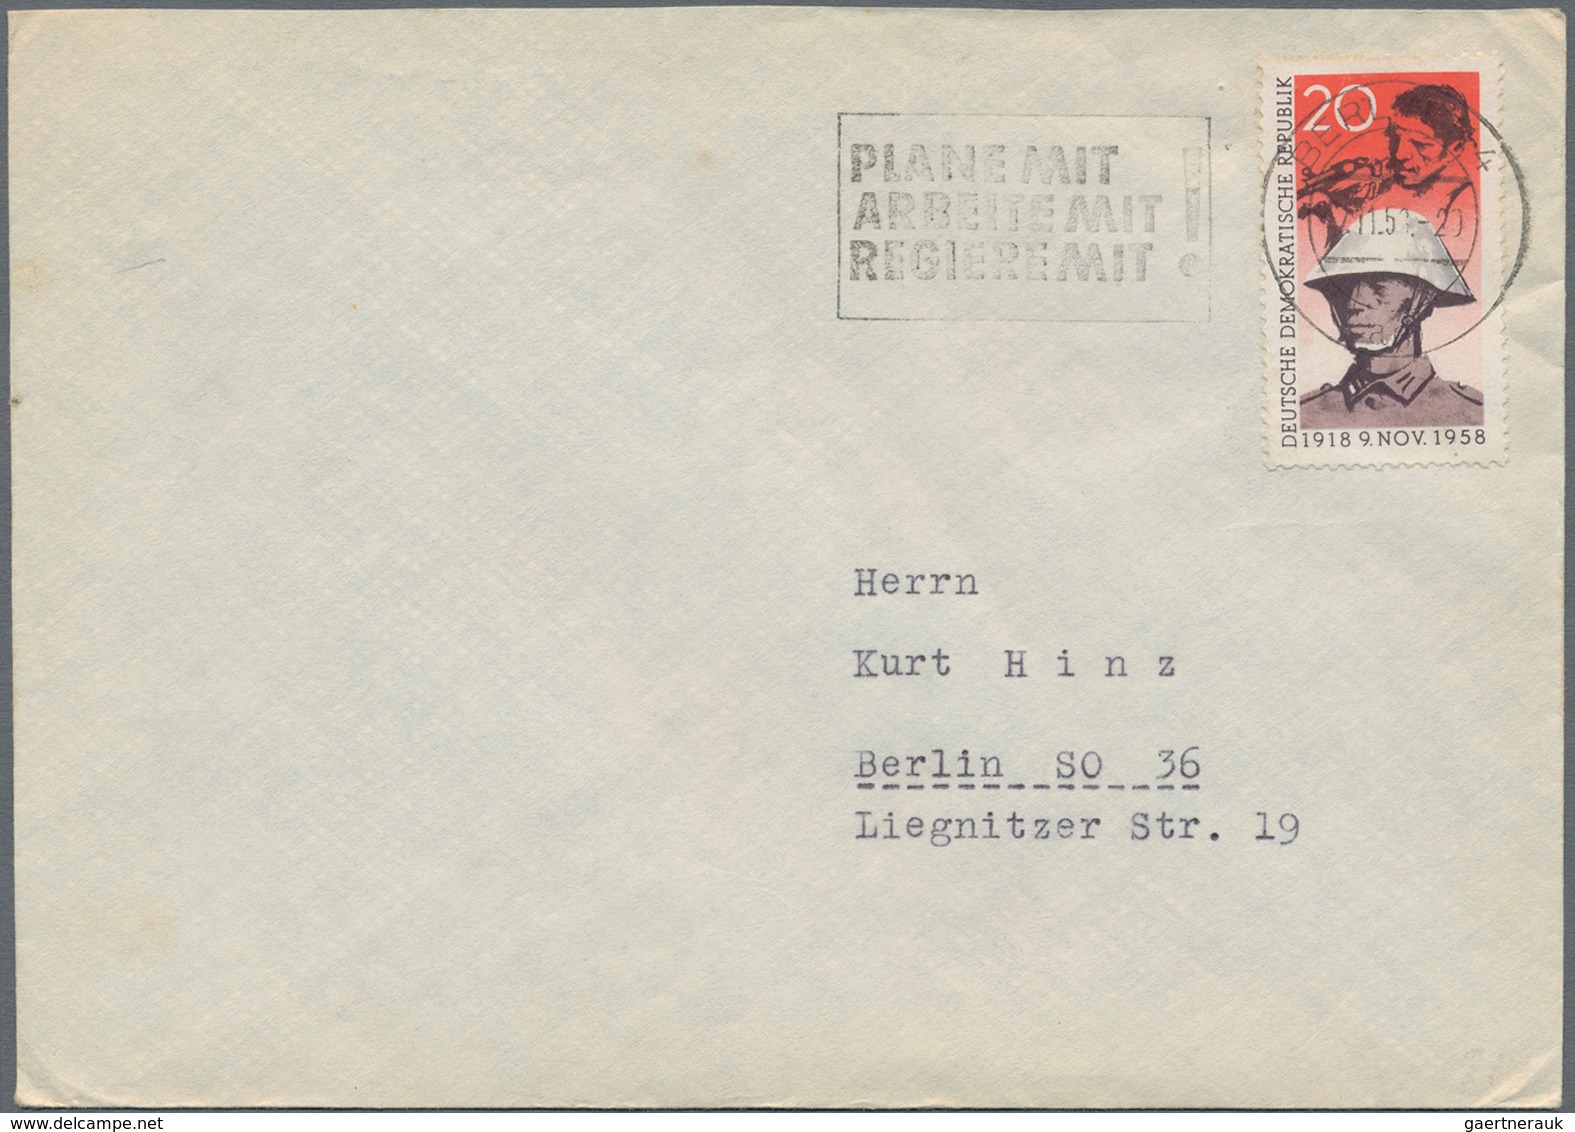 DDR: 1958, 20 Pfg. Novemberrevolution, 30 Briefe, Meist Mit Stempel 7.11.58 Vor 14.00 Uhr, Jedoch Au - Storia Postale